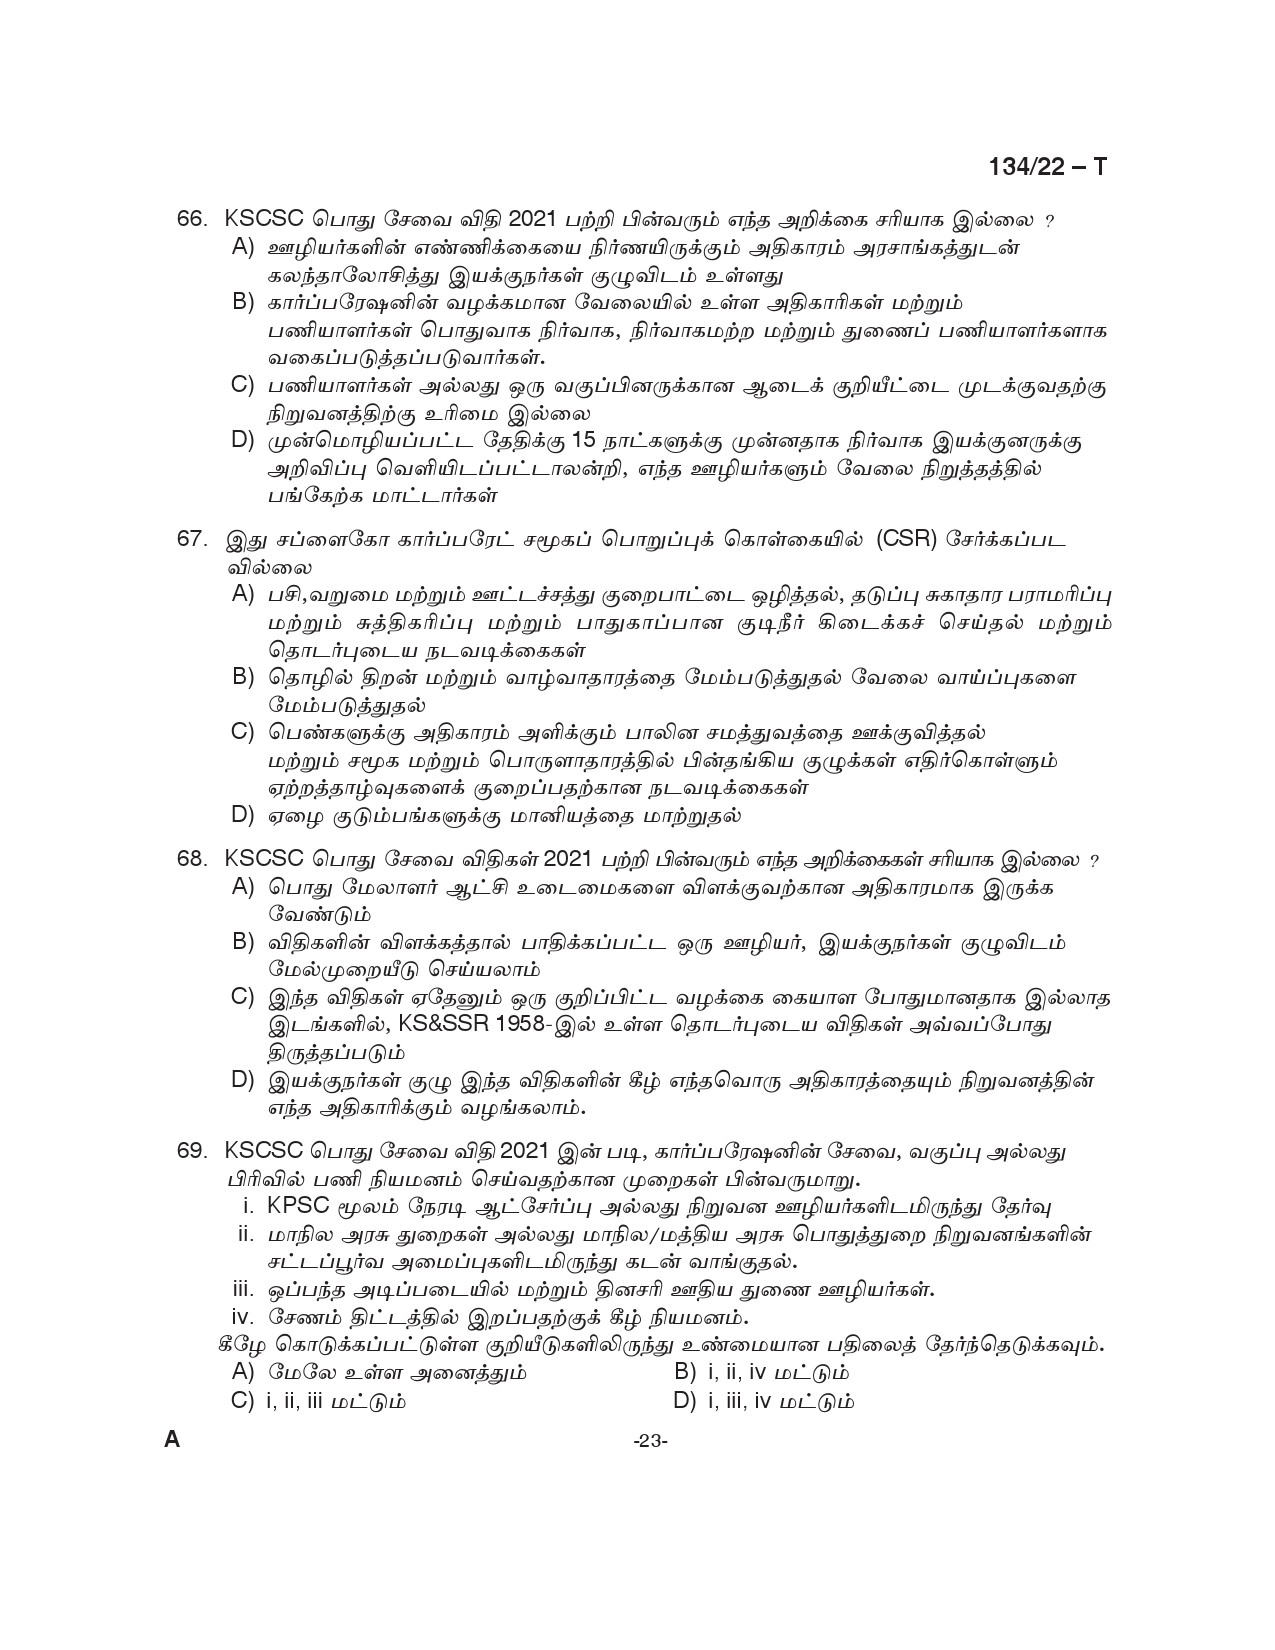 KPSC Junior Manager General Tamil Exam 2022 Code 1342022 23